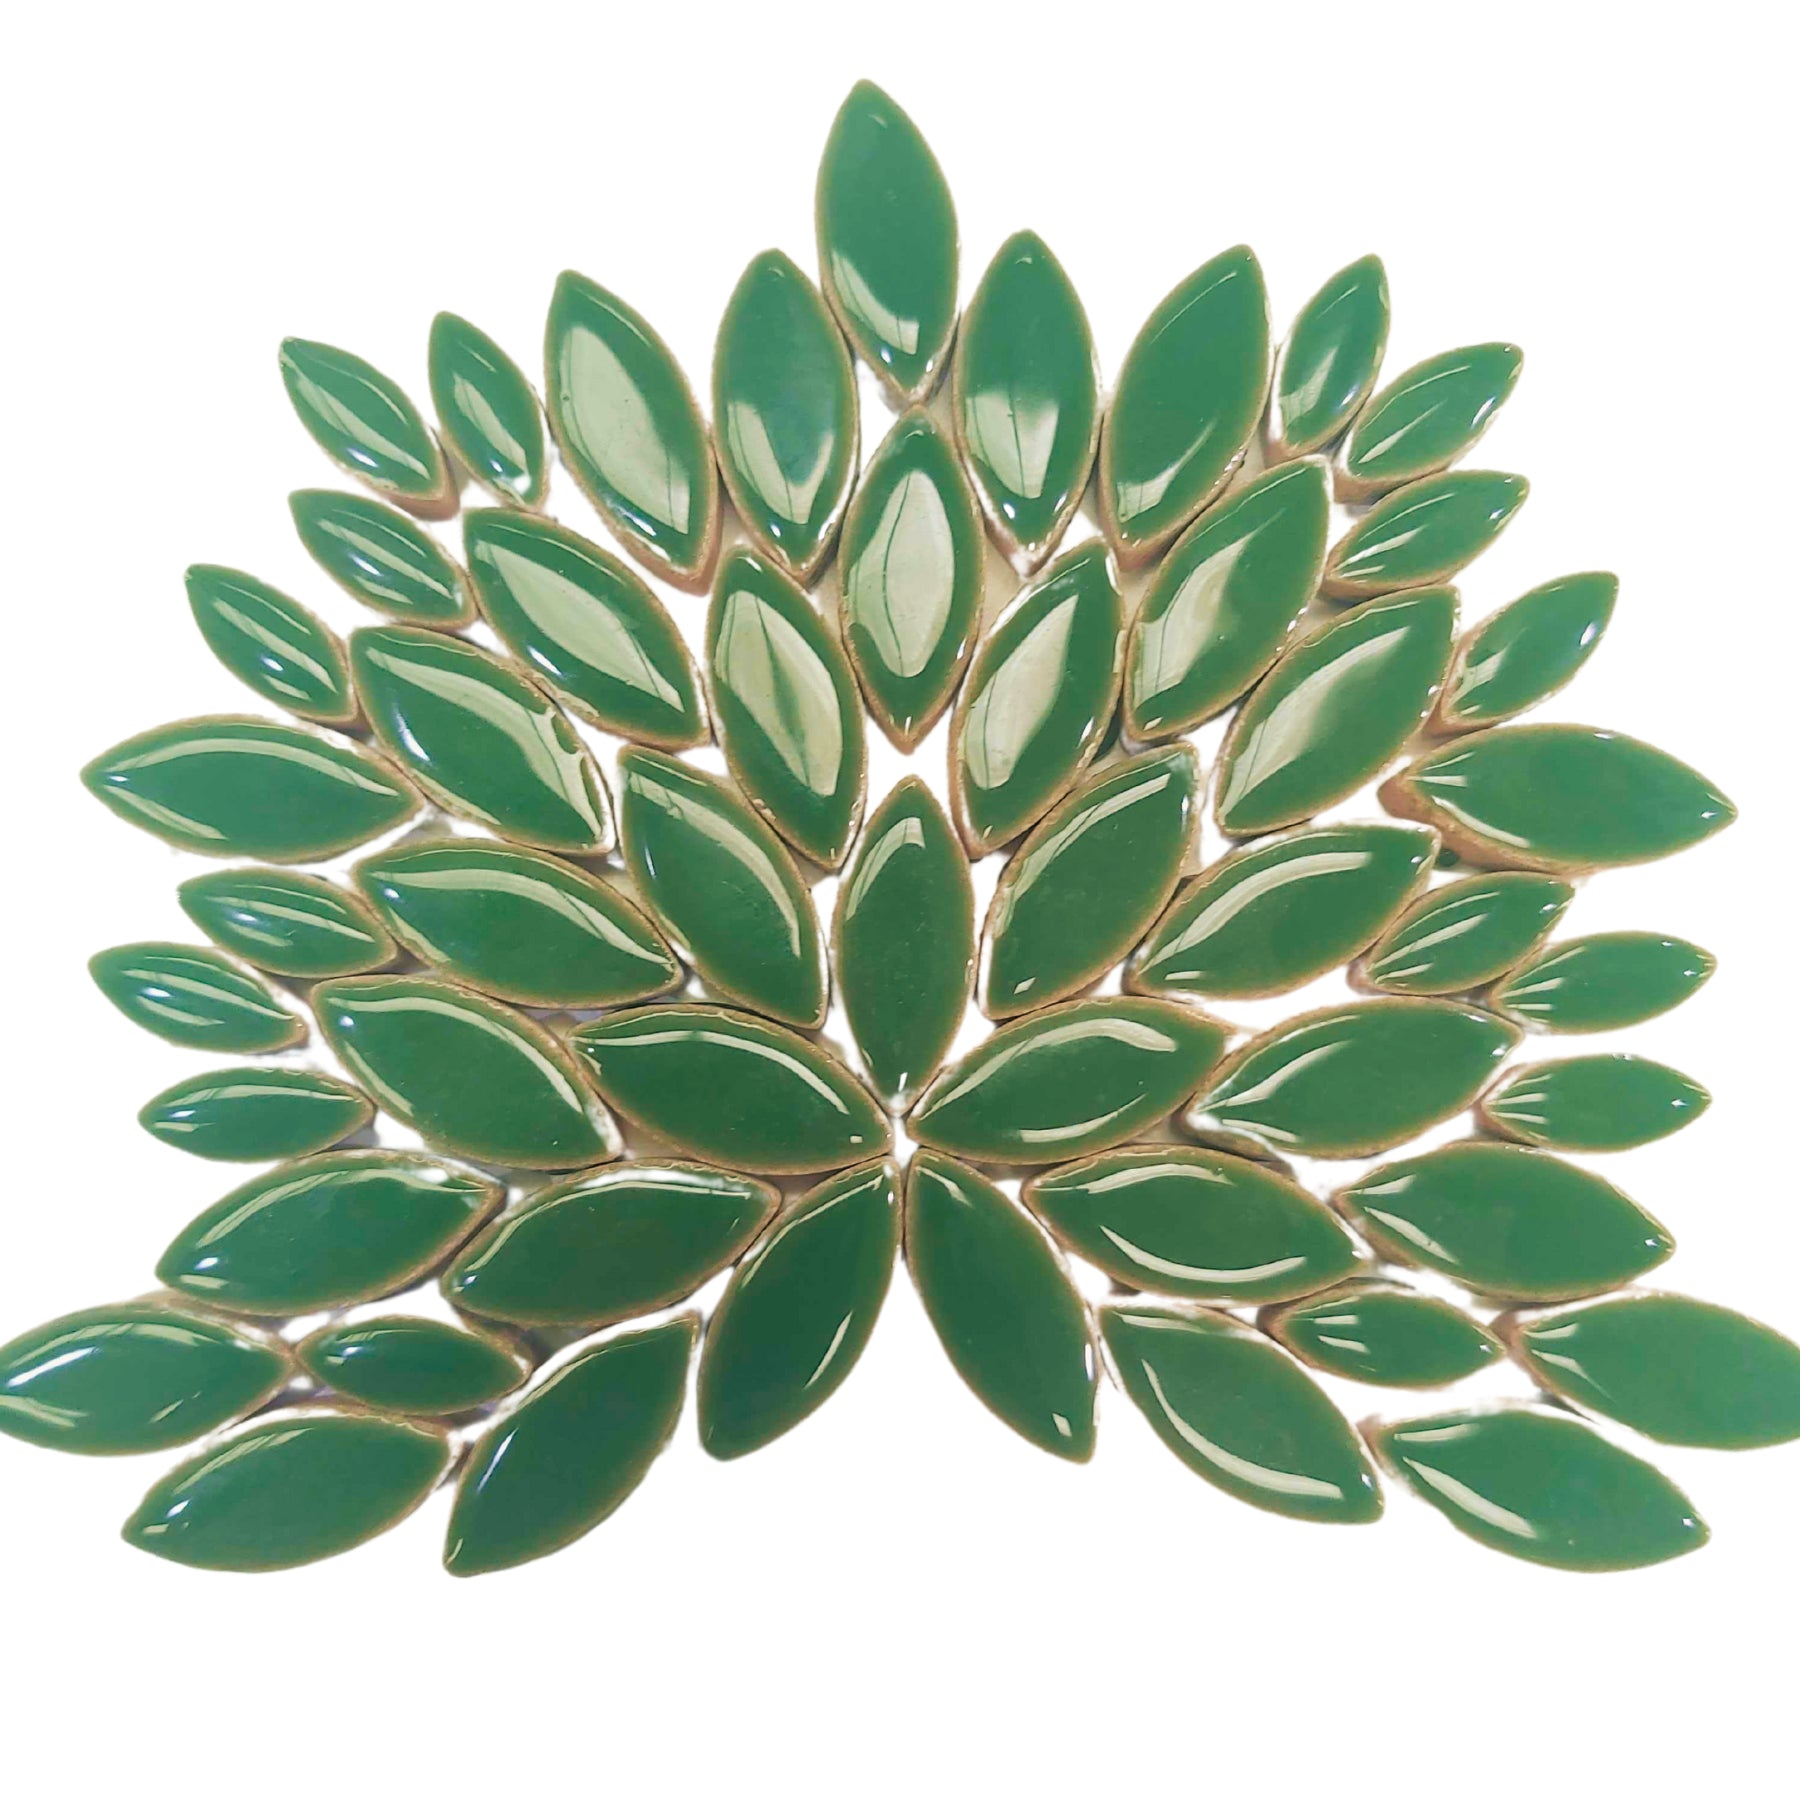 Ceramic Petals - Fern Green *DISCONTINUED*